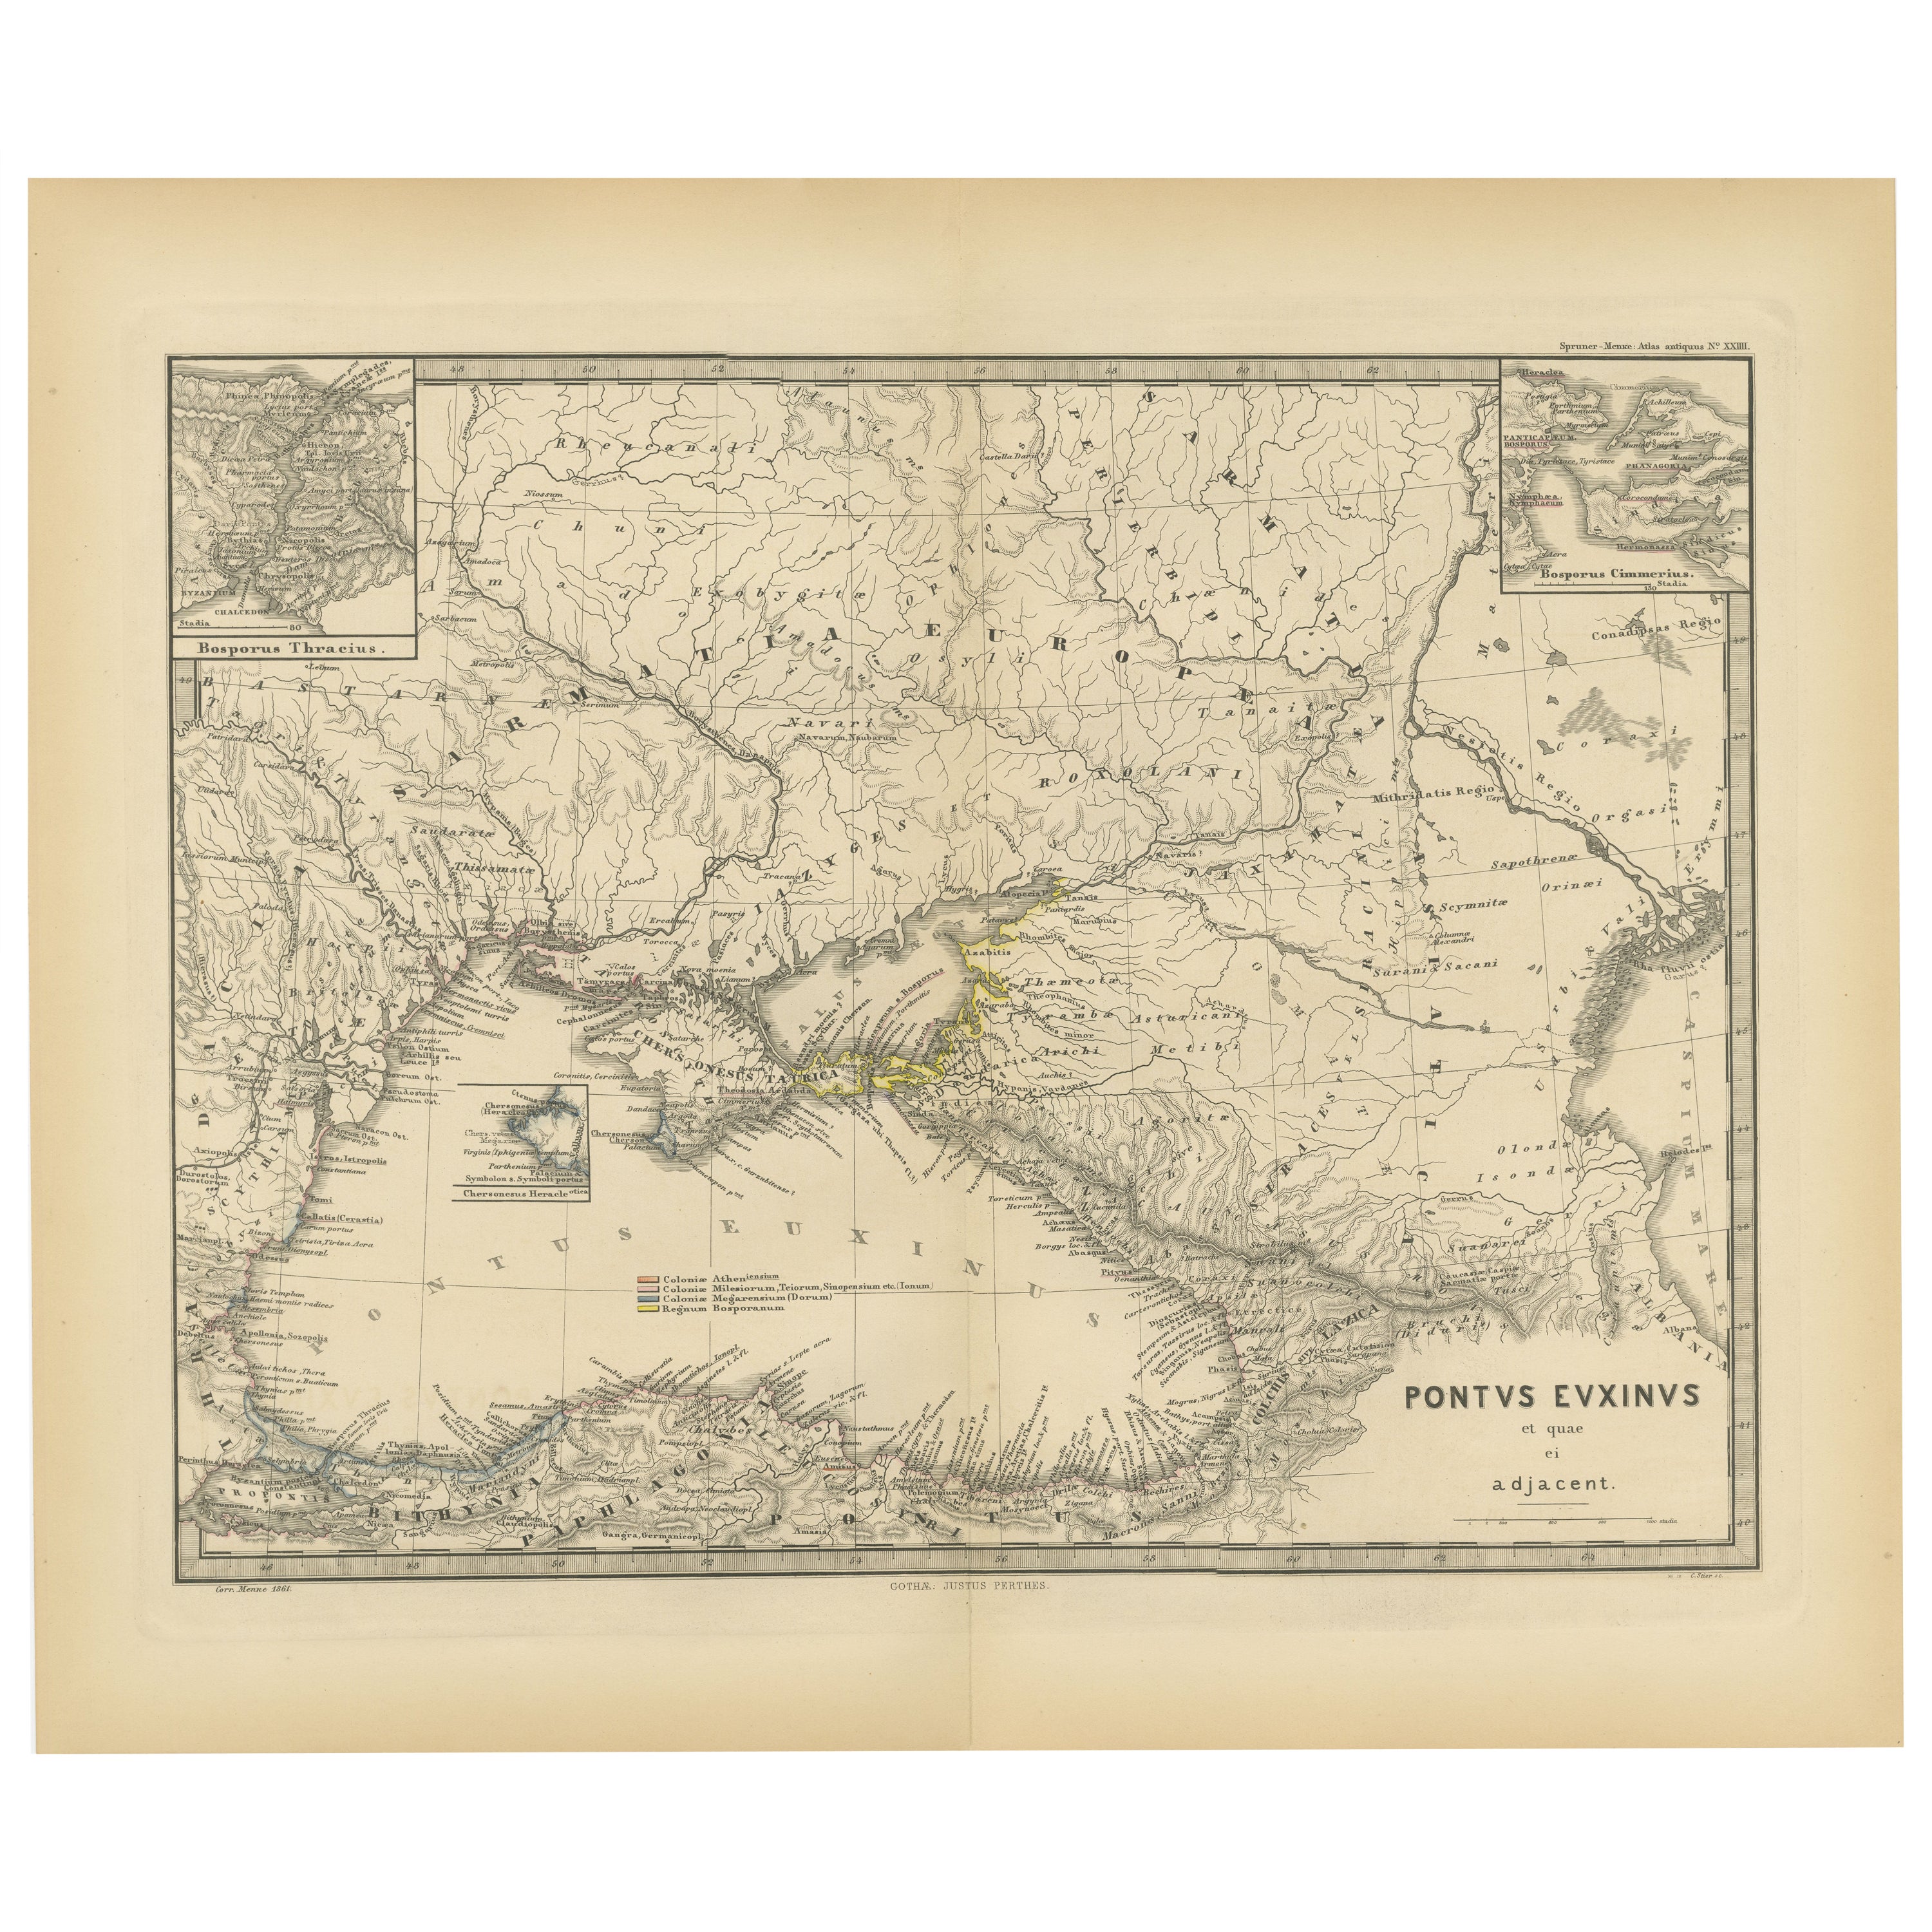 La mer noire en antiquité : carte de Pontus Euxinus, publiée en 1880